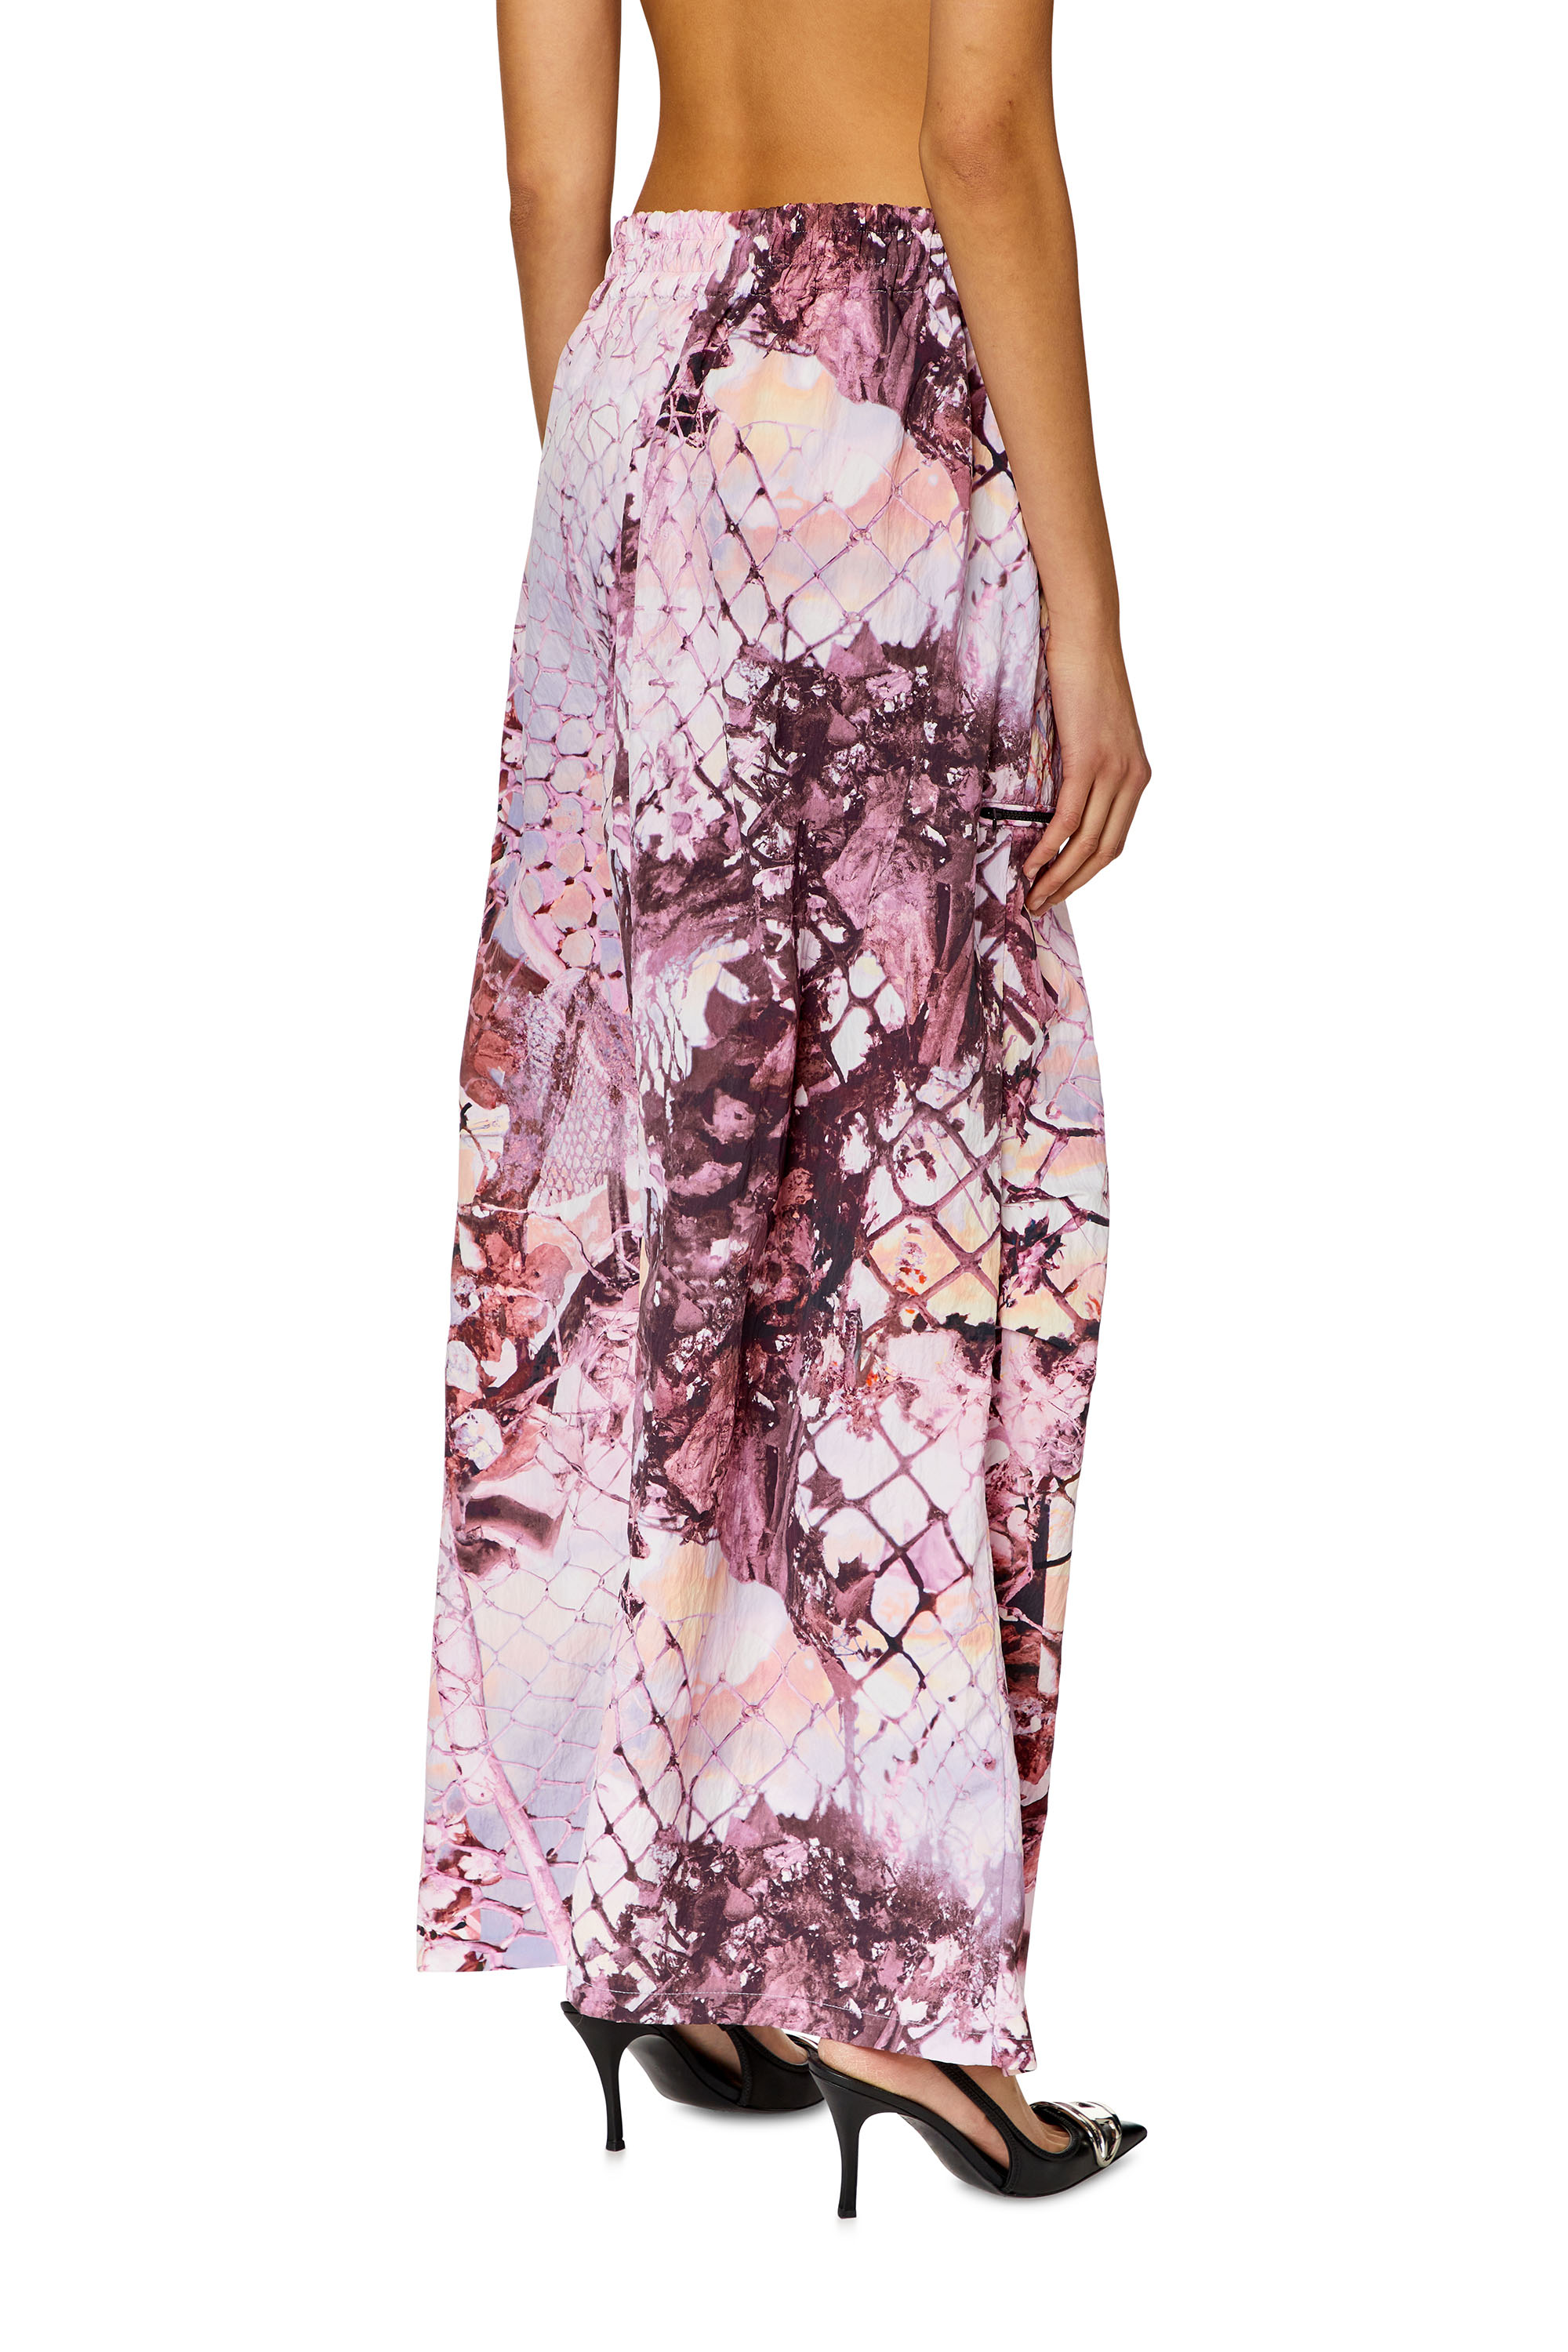 Diesel - O-DIAMY-N1, Woman Long skirt in printed crinkled nylon in Violet - Image 3